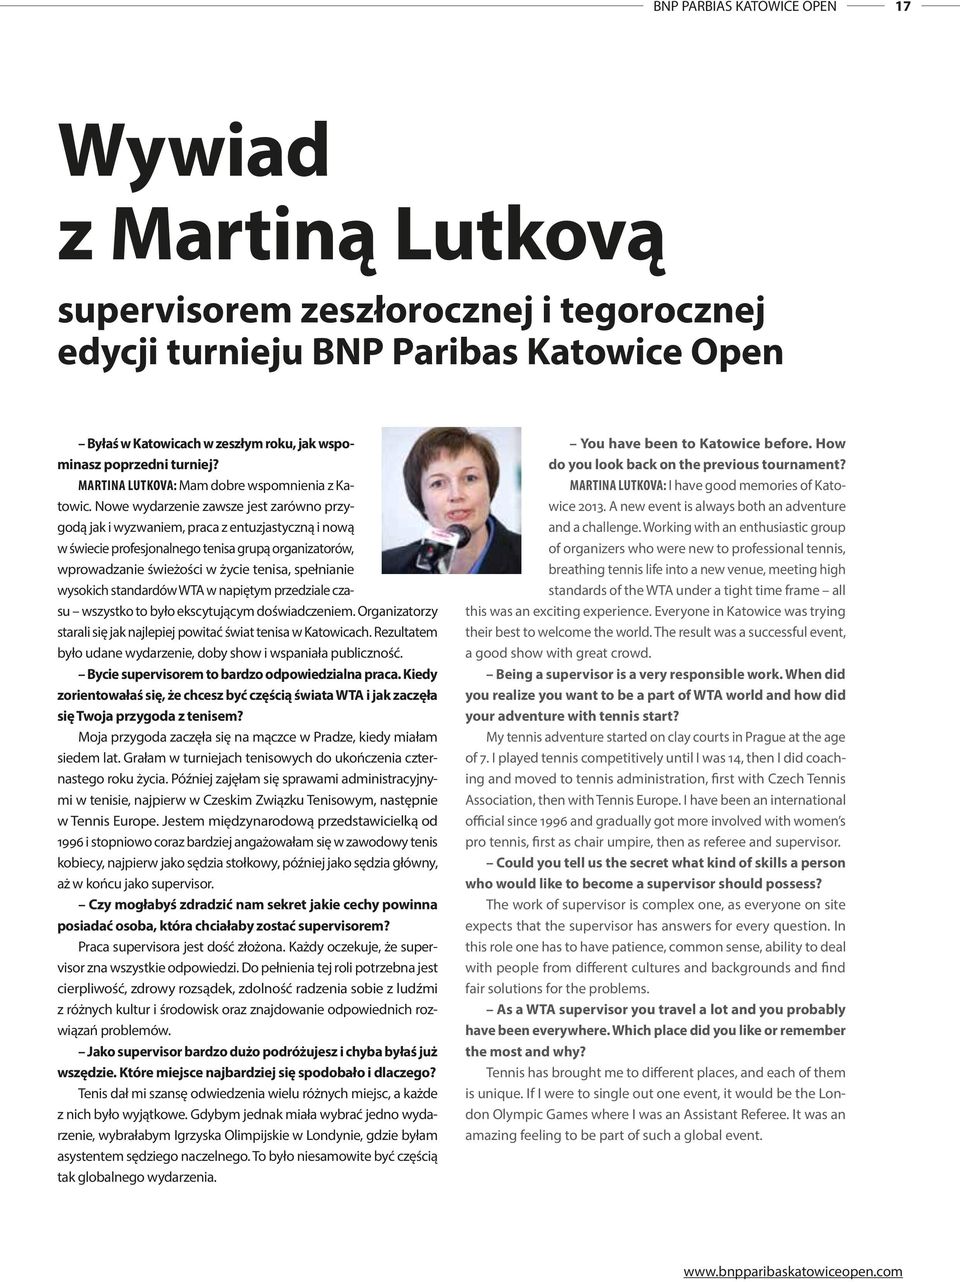 MARTINA LUTKOVA: Mam dobre wspomnienia z Katowic Nowe wydarzenie zawsze jest zarówno przygodą jak i wyzwaniem, praca z entuzjastyczną i nową w świecie profesjonalnego tenisa grupą organizatorów,